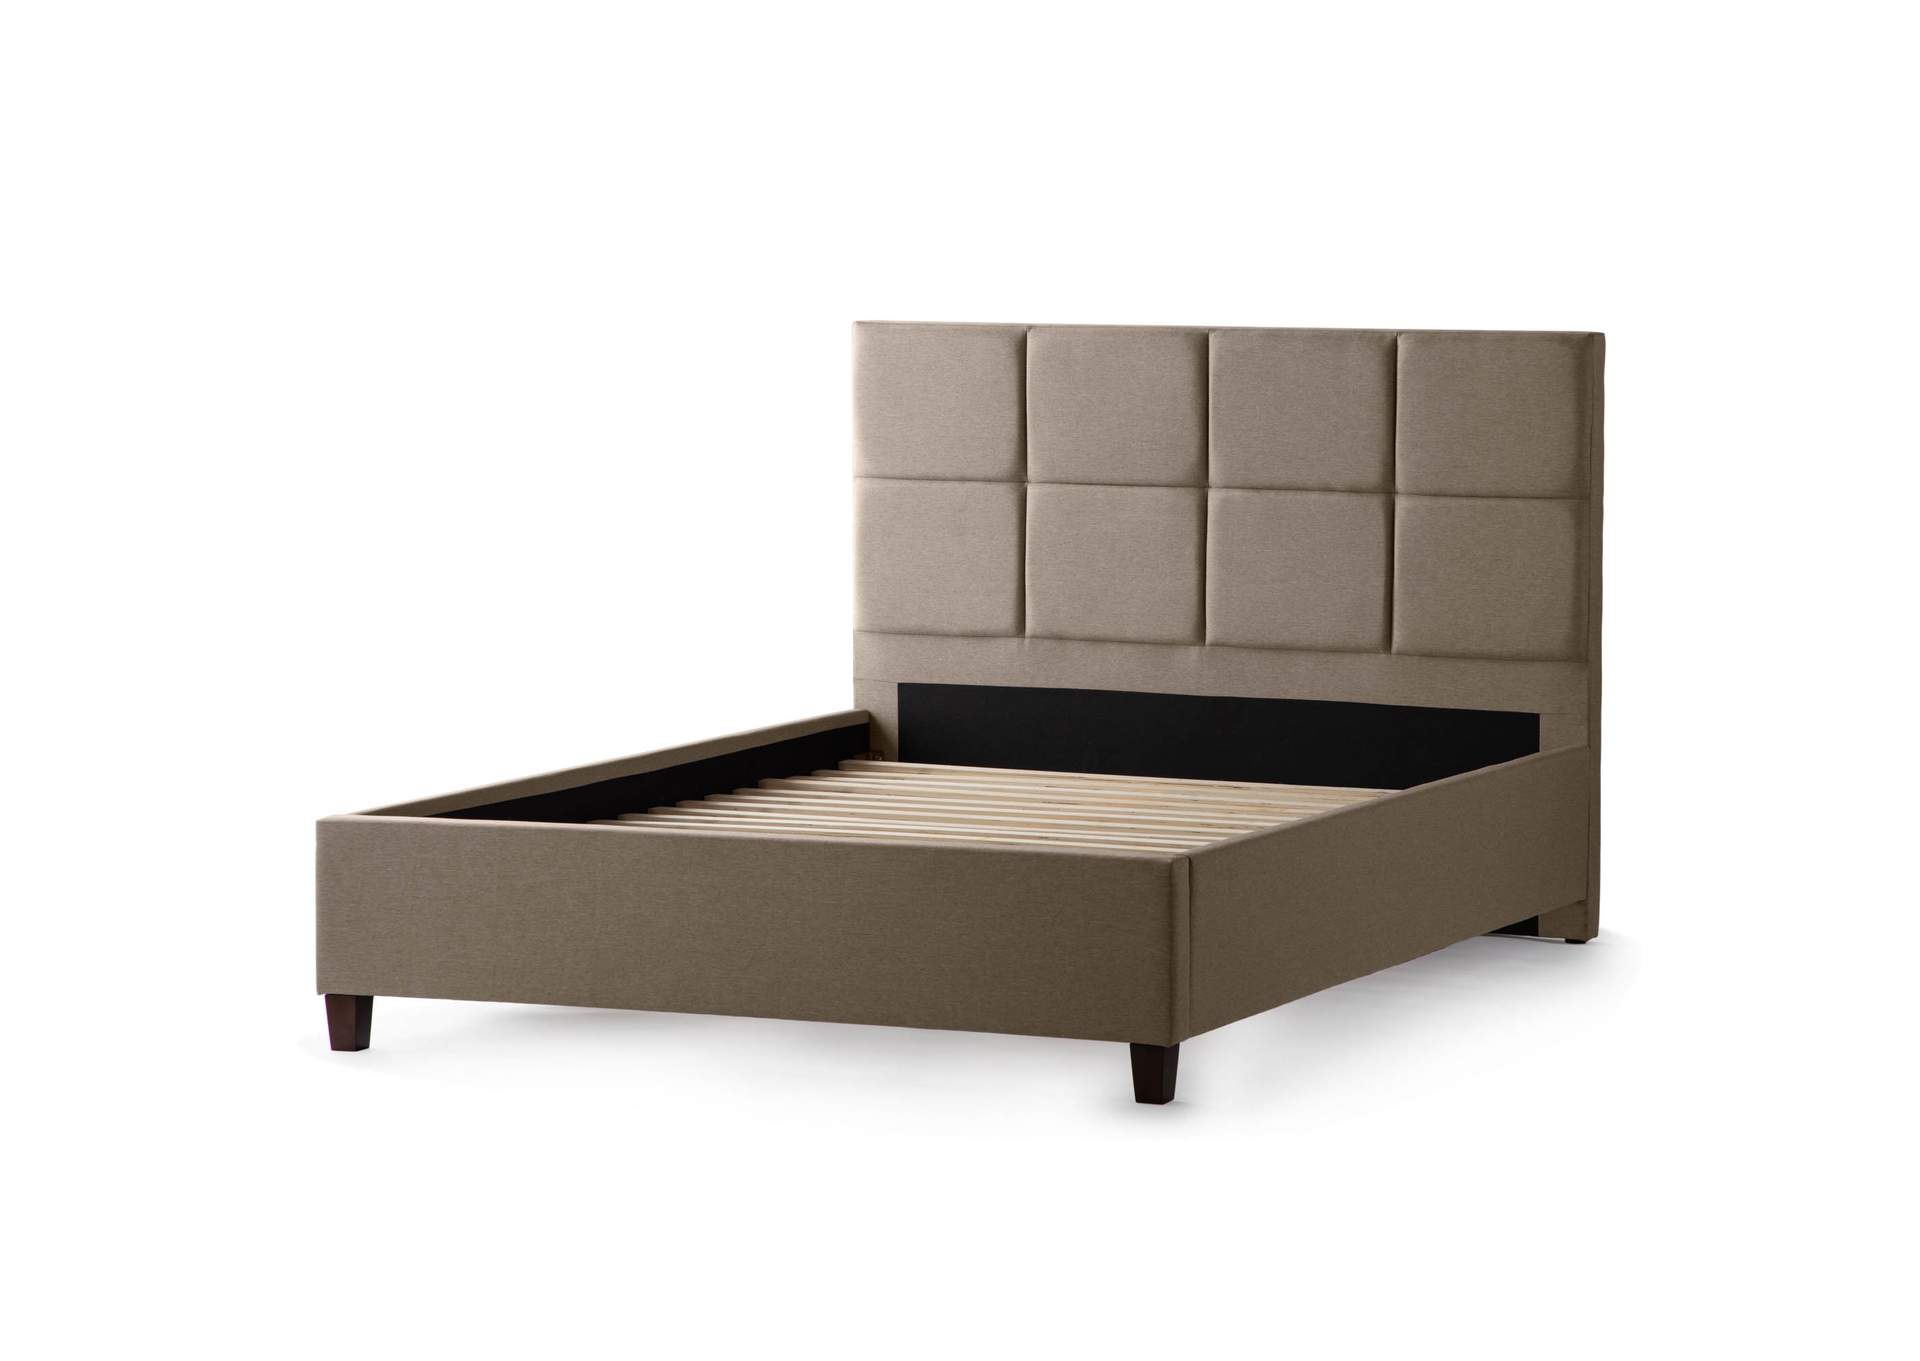 Malouf Desert Scoresby Upholstered Full Bed,Malouf